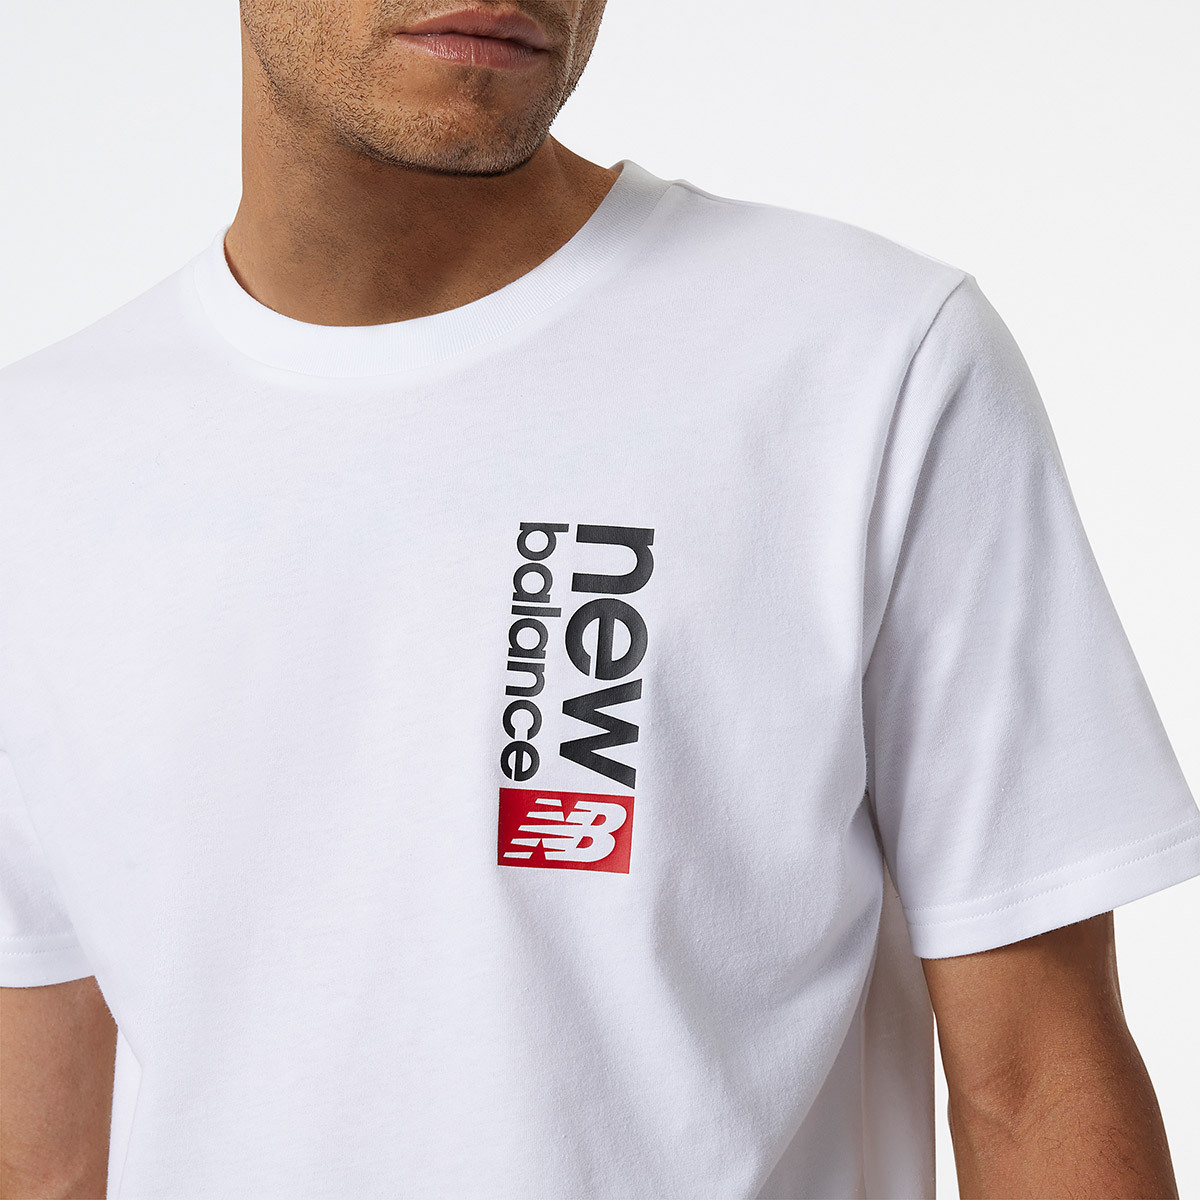 뉴발란스 남성 반소매 티셔츠 - 화이트, M